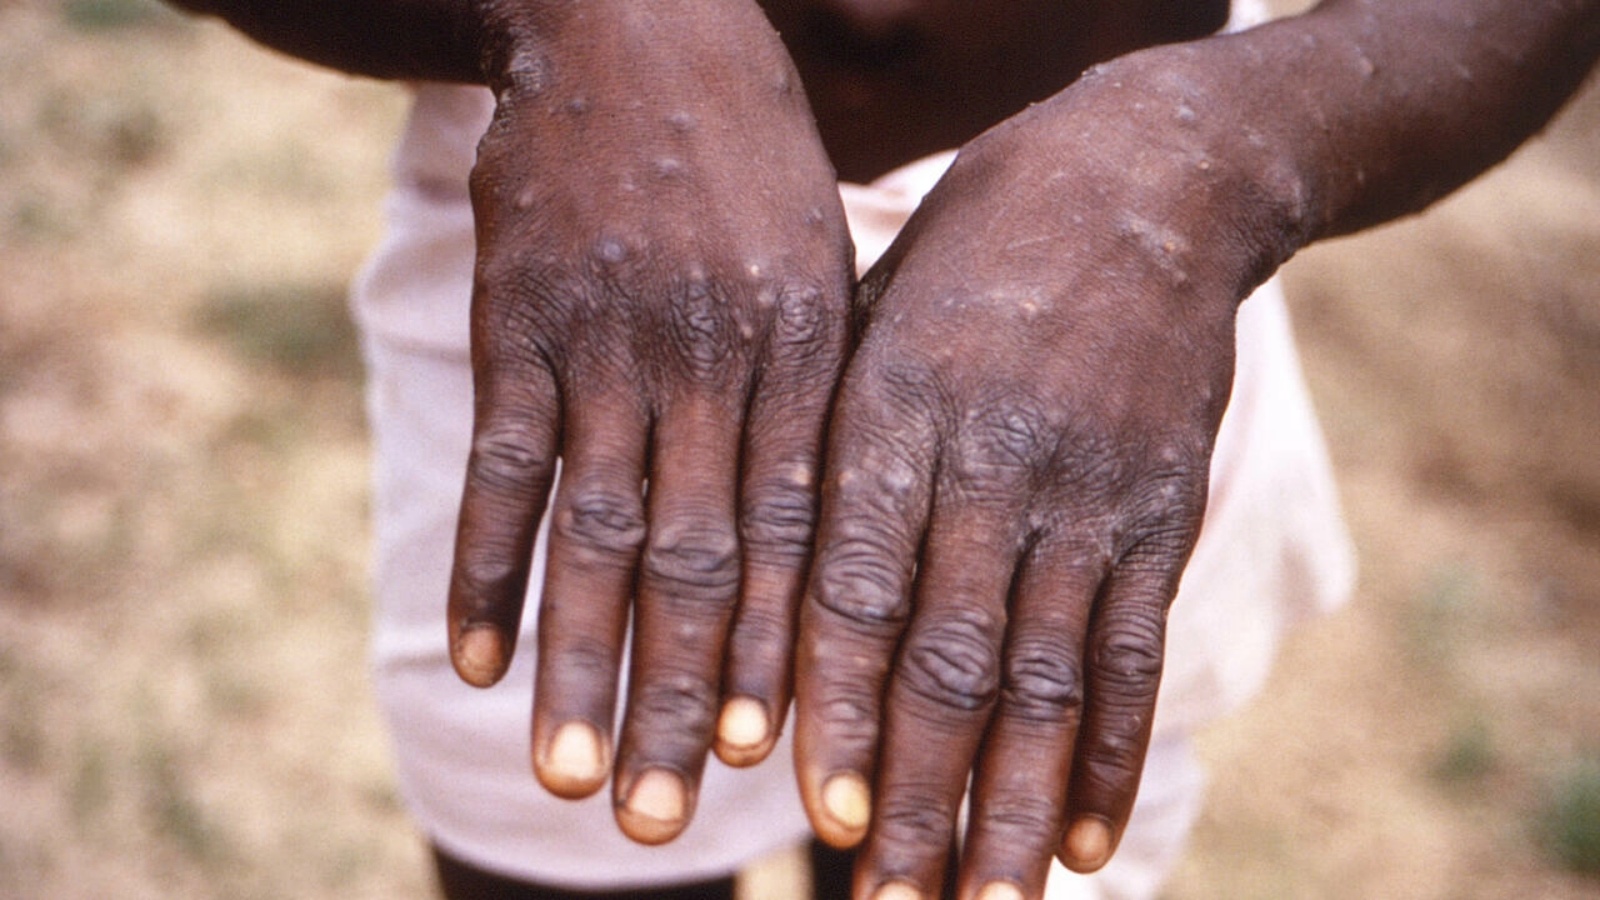 طفح جلدي على يدي رجل أصيب بجدري القردة في جمهورية الكونغو الديموقراطية في 1997 في صورة وزّعتها المراكز الأميركية للسيطرة على الأمراض والوقاية منها.